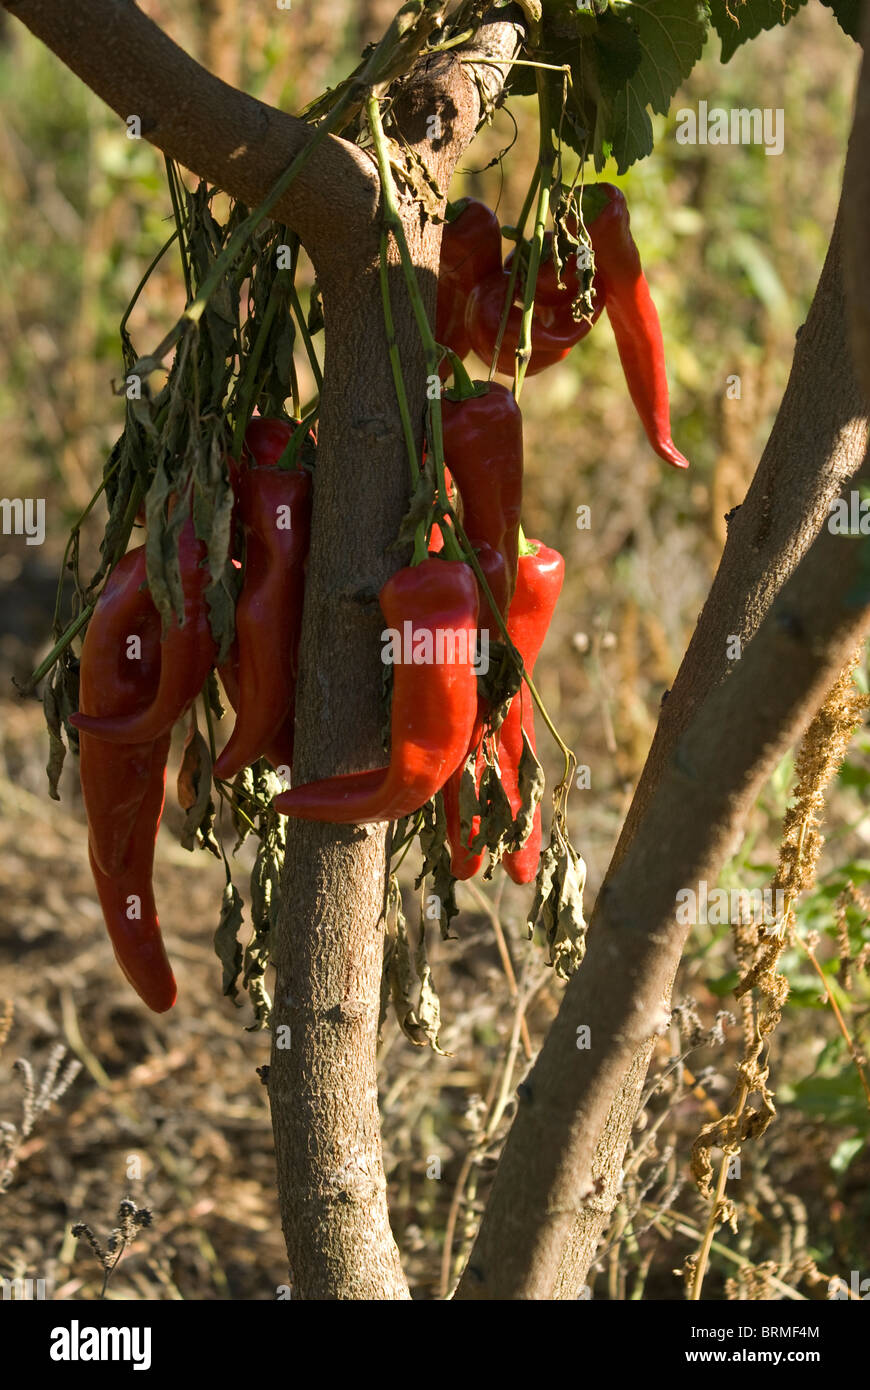 Rote Paprika gebunden in einem Bündel unter Baum zum Trocknen aufhängen Stockfoto